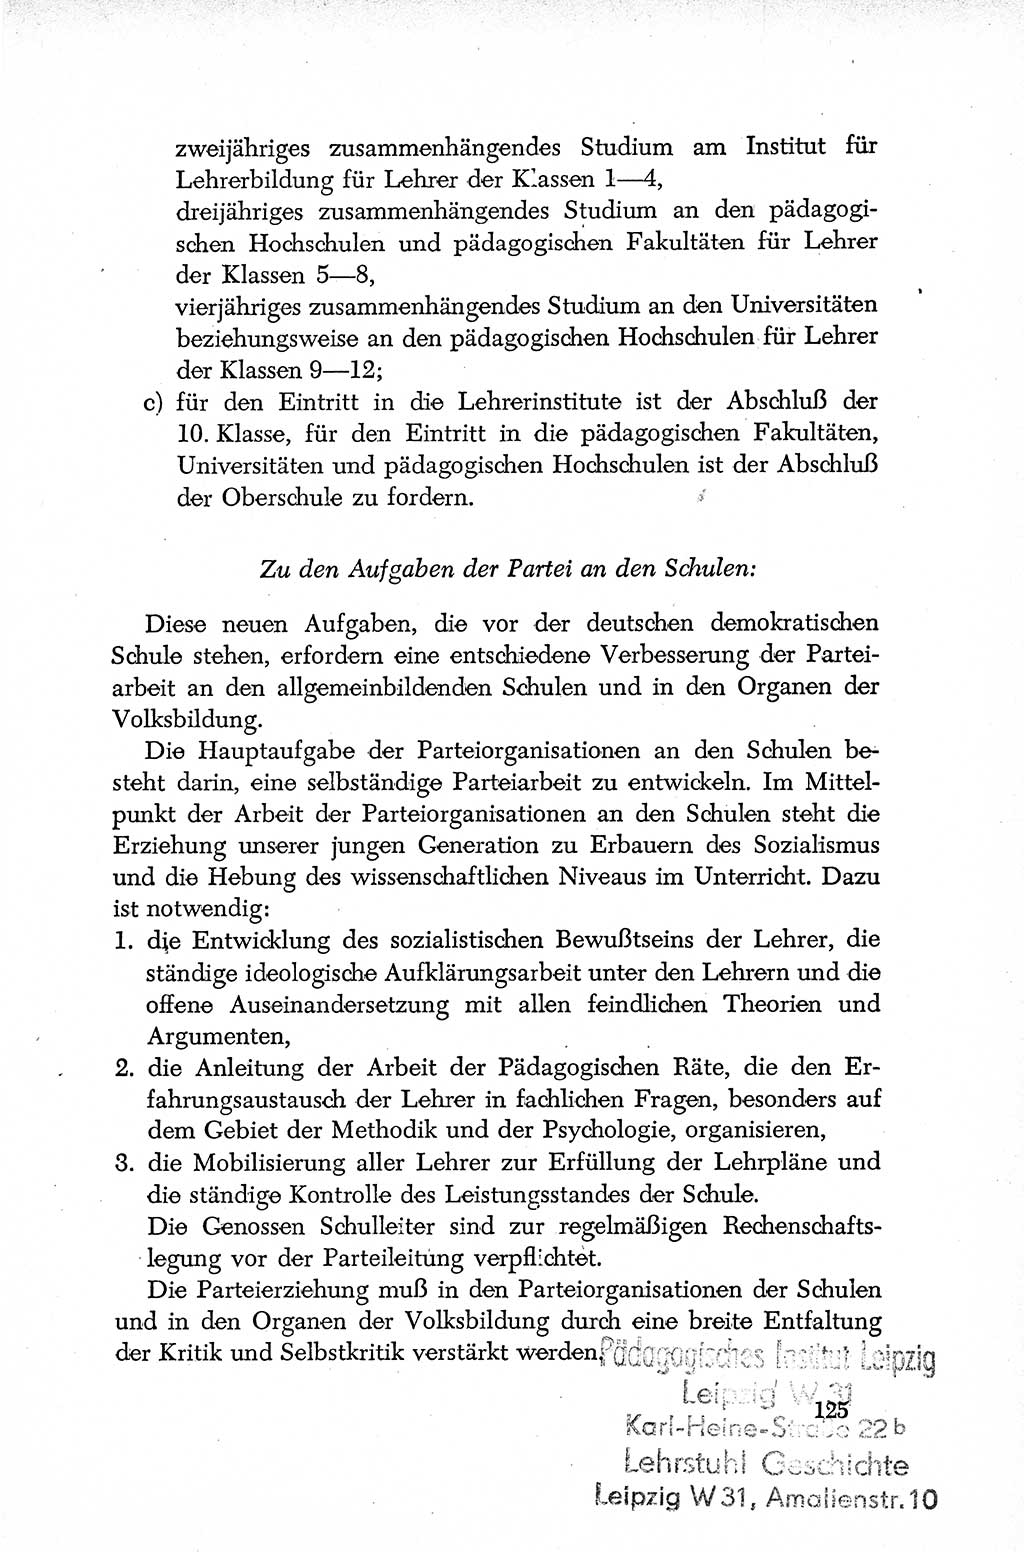 Dokumente der Sozialistischen Einheitspartei Deutschlands (SED) [Deutsche Demokratische Republik (DDR)] 1952-1953, Seite 125 (Dok. SED DDR 1952-1953, S. 125)